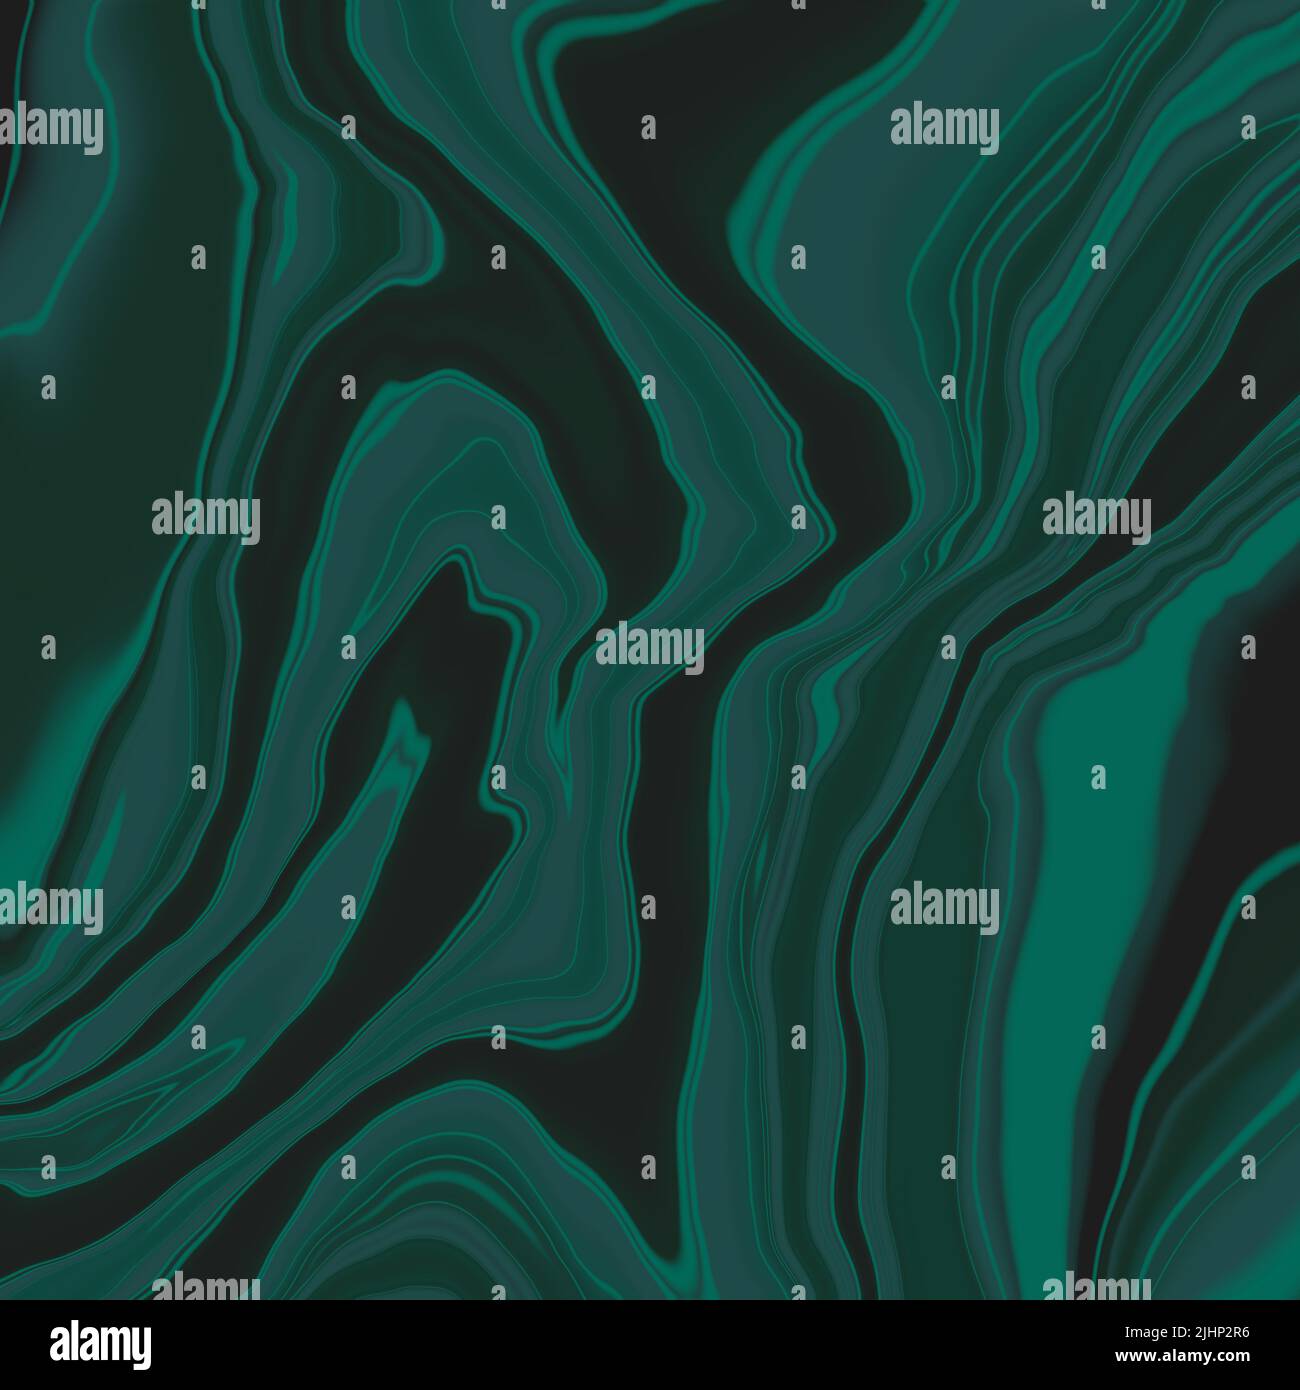 Abstrakte Flecken von dunkelgrüner Farbe. Malachitstein-Effekt. Grafische Abbildung. Stockfoto